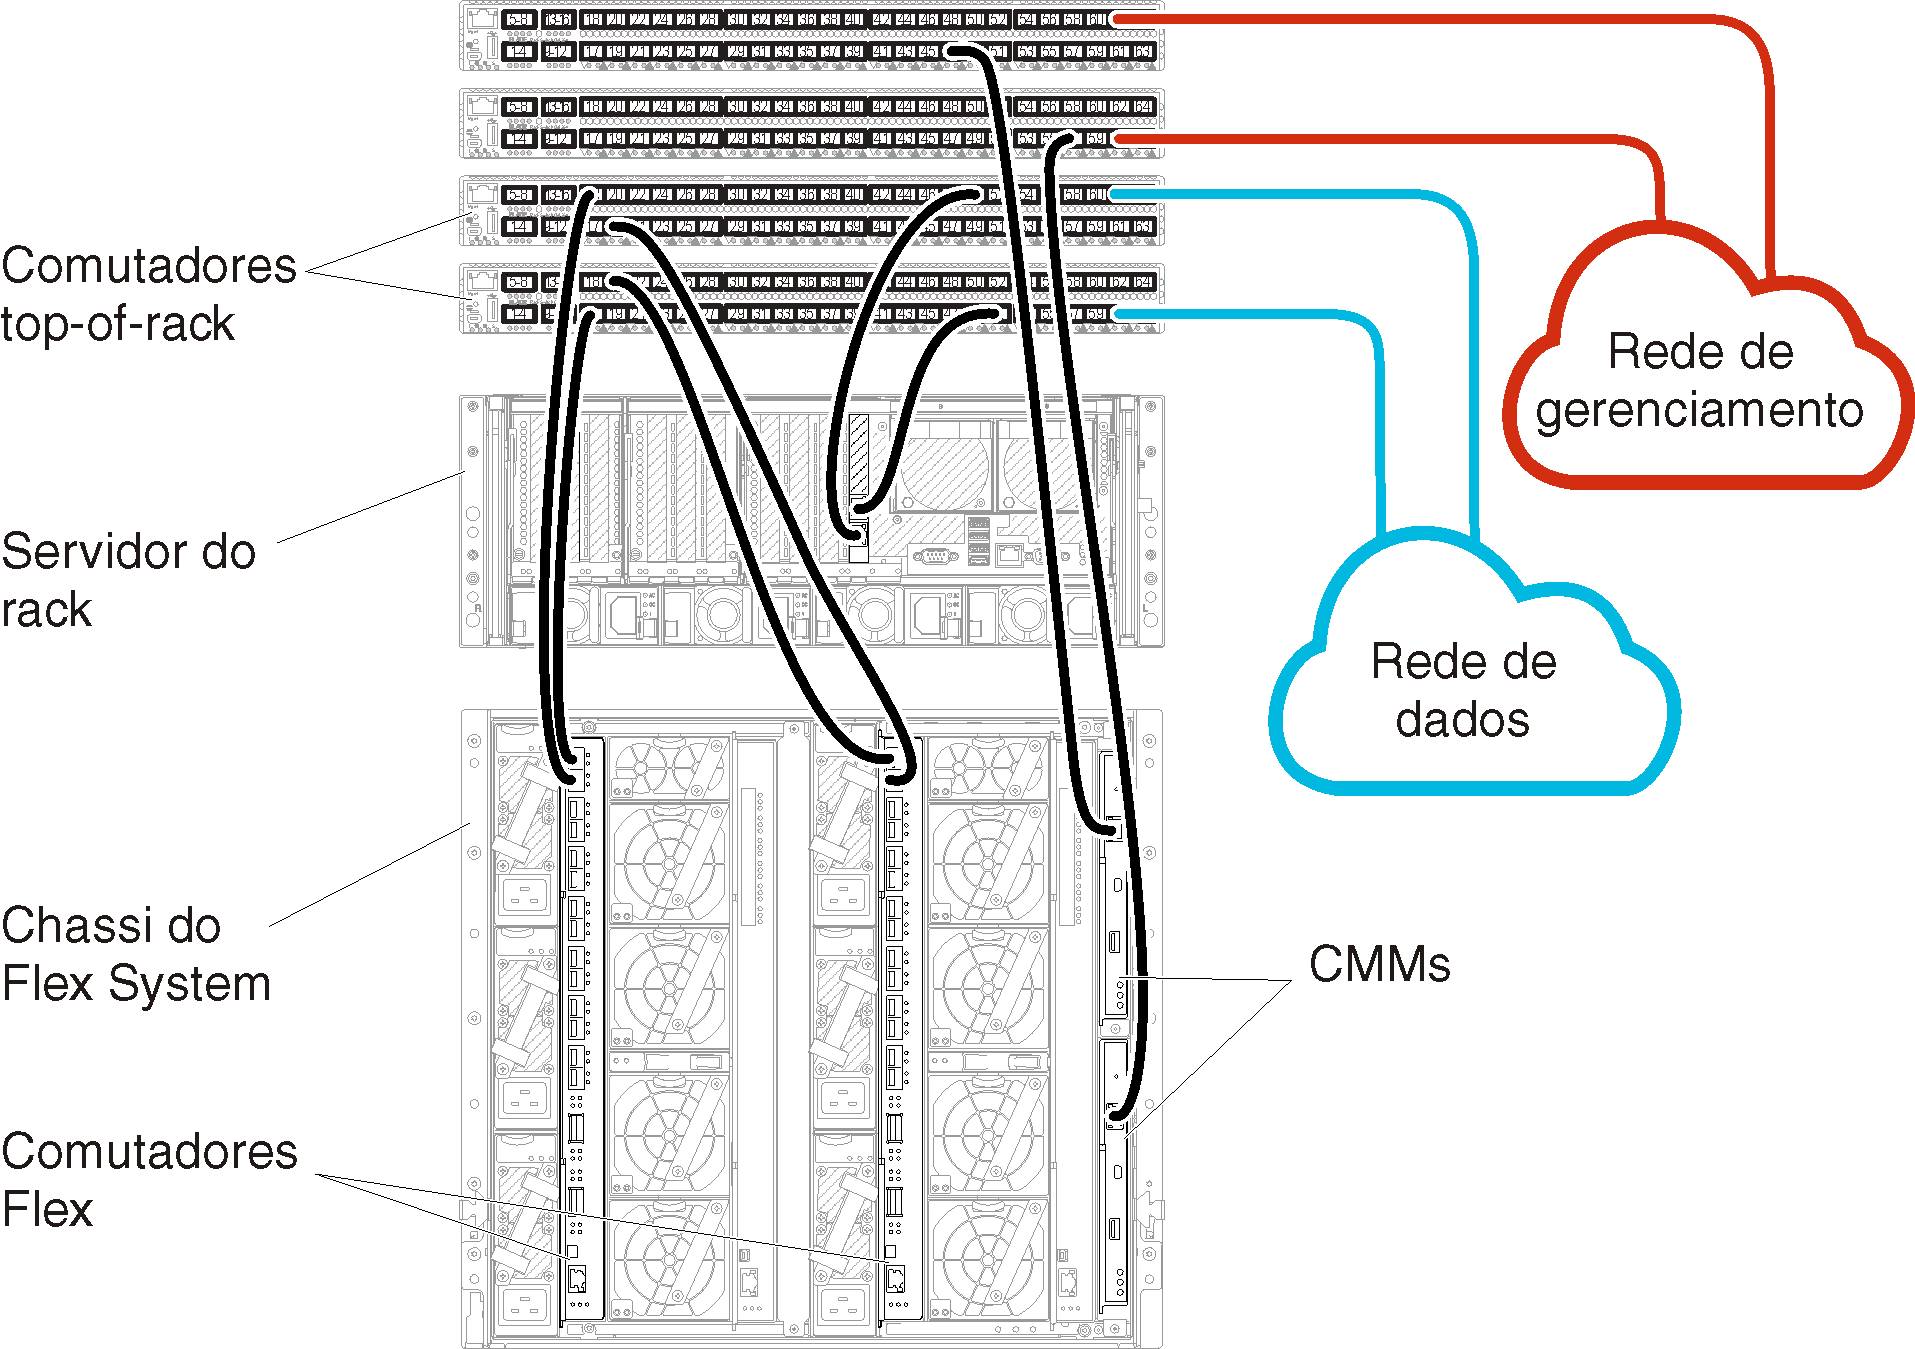 Ilustra cabeamento do Comutadores Flex e de CMMs para comutadores top-of-rack para dados separados fisicamente e redes de gerenciamento